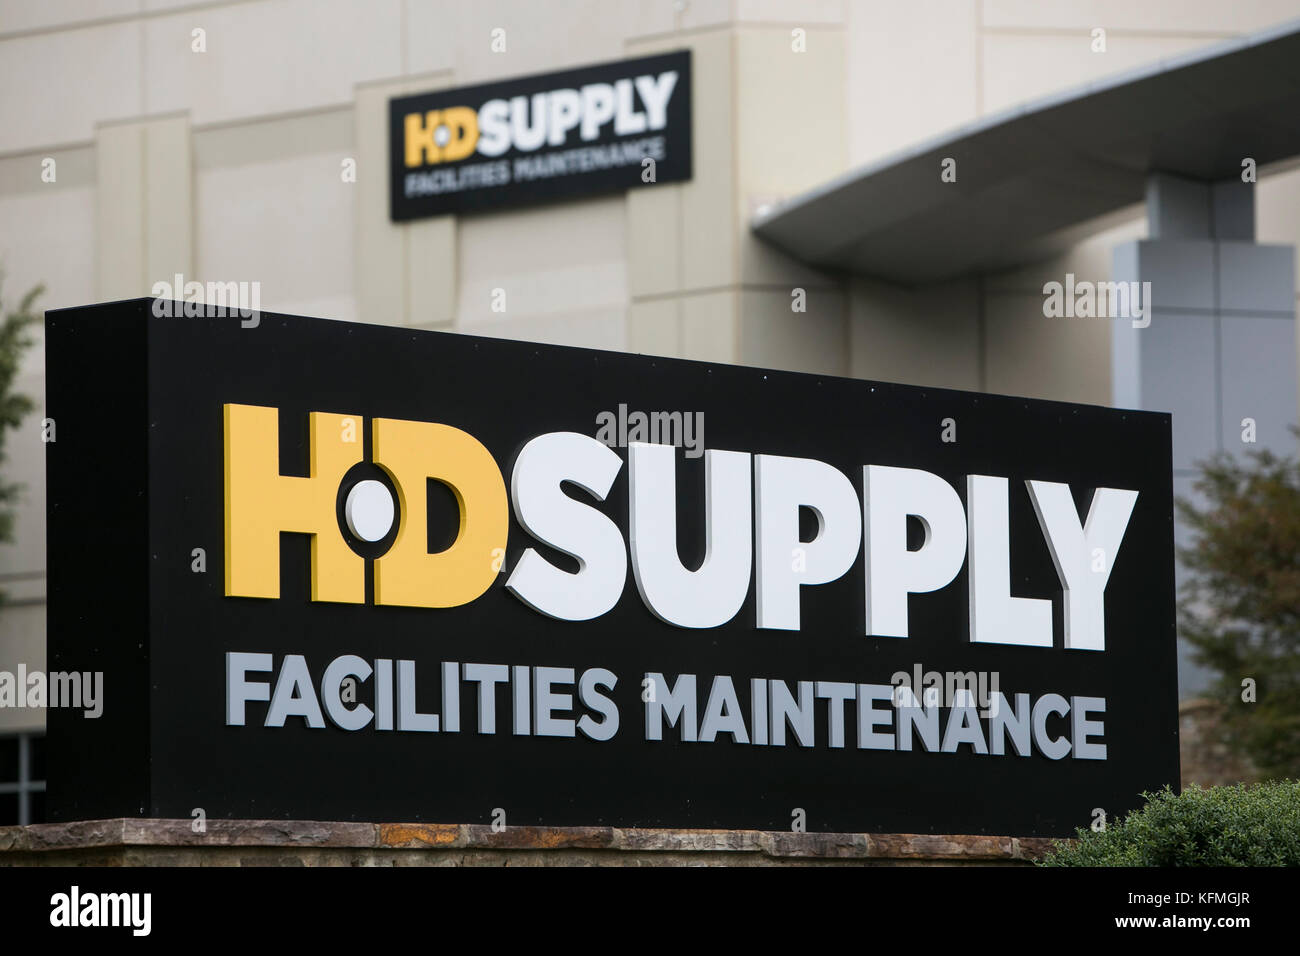 Un logo affiche à l'extérieur d'un établissement occupé par hd supply entretien des installations dans la région de Marietta, Géorgie le 7 octobre 2017. Banque D'Images